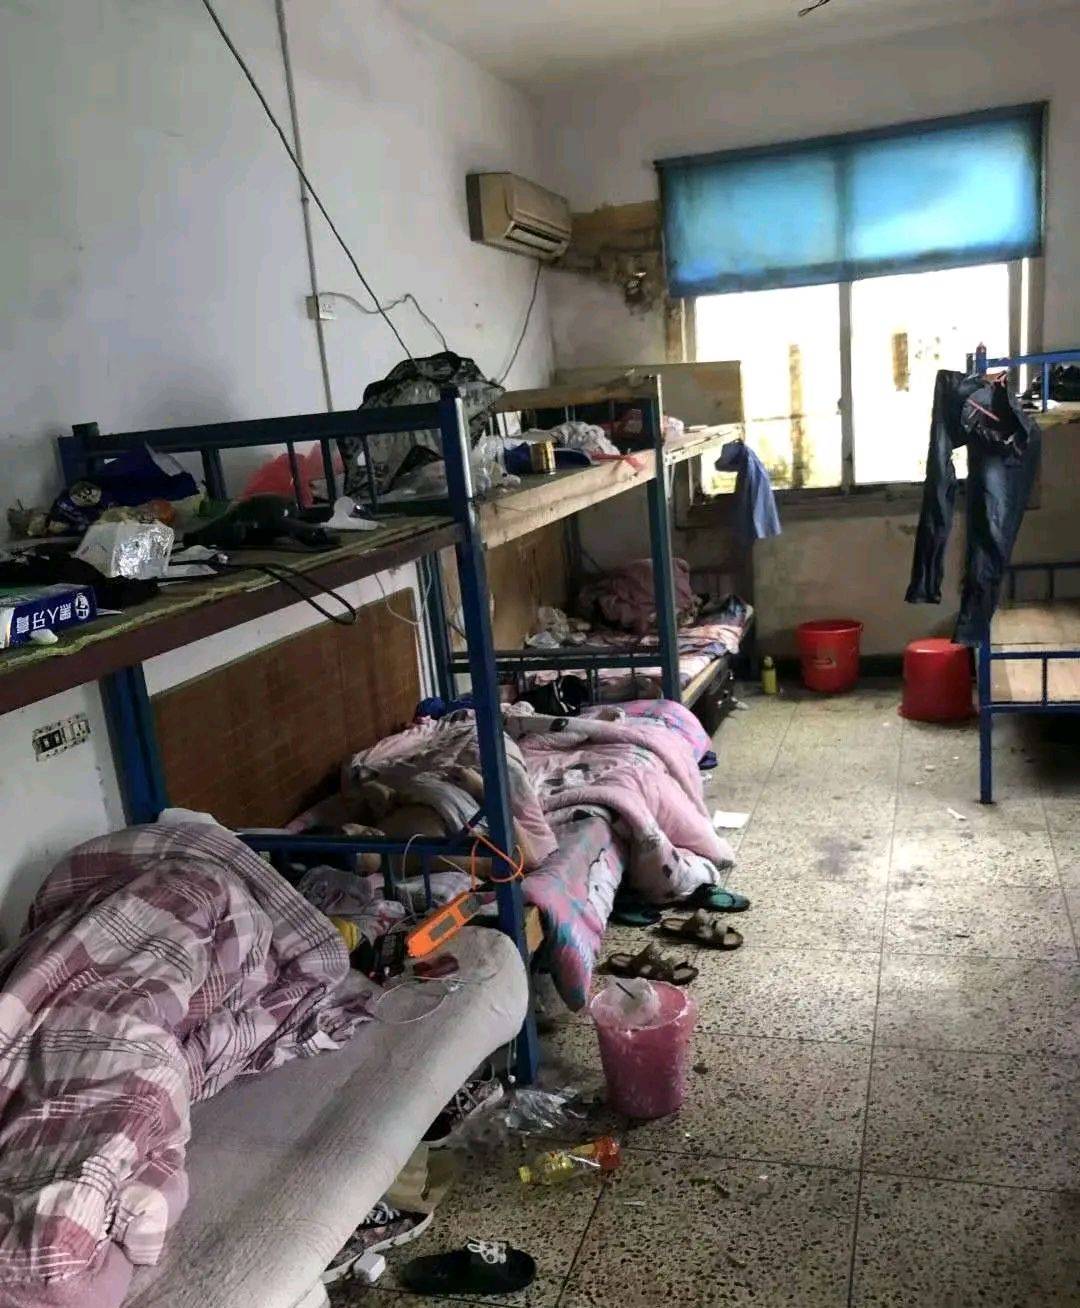 今天进了一家深圳工厂,这是宿舍,我有点不敢相信我眼前的